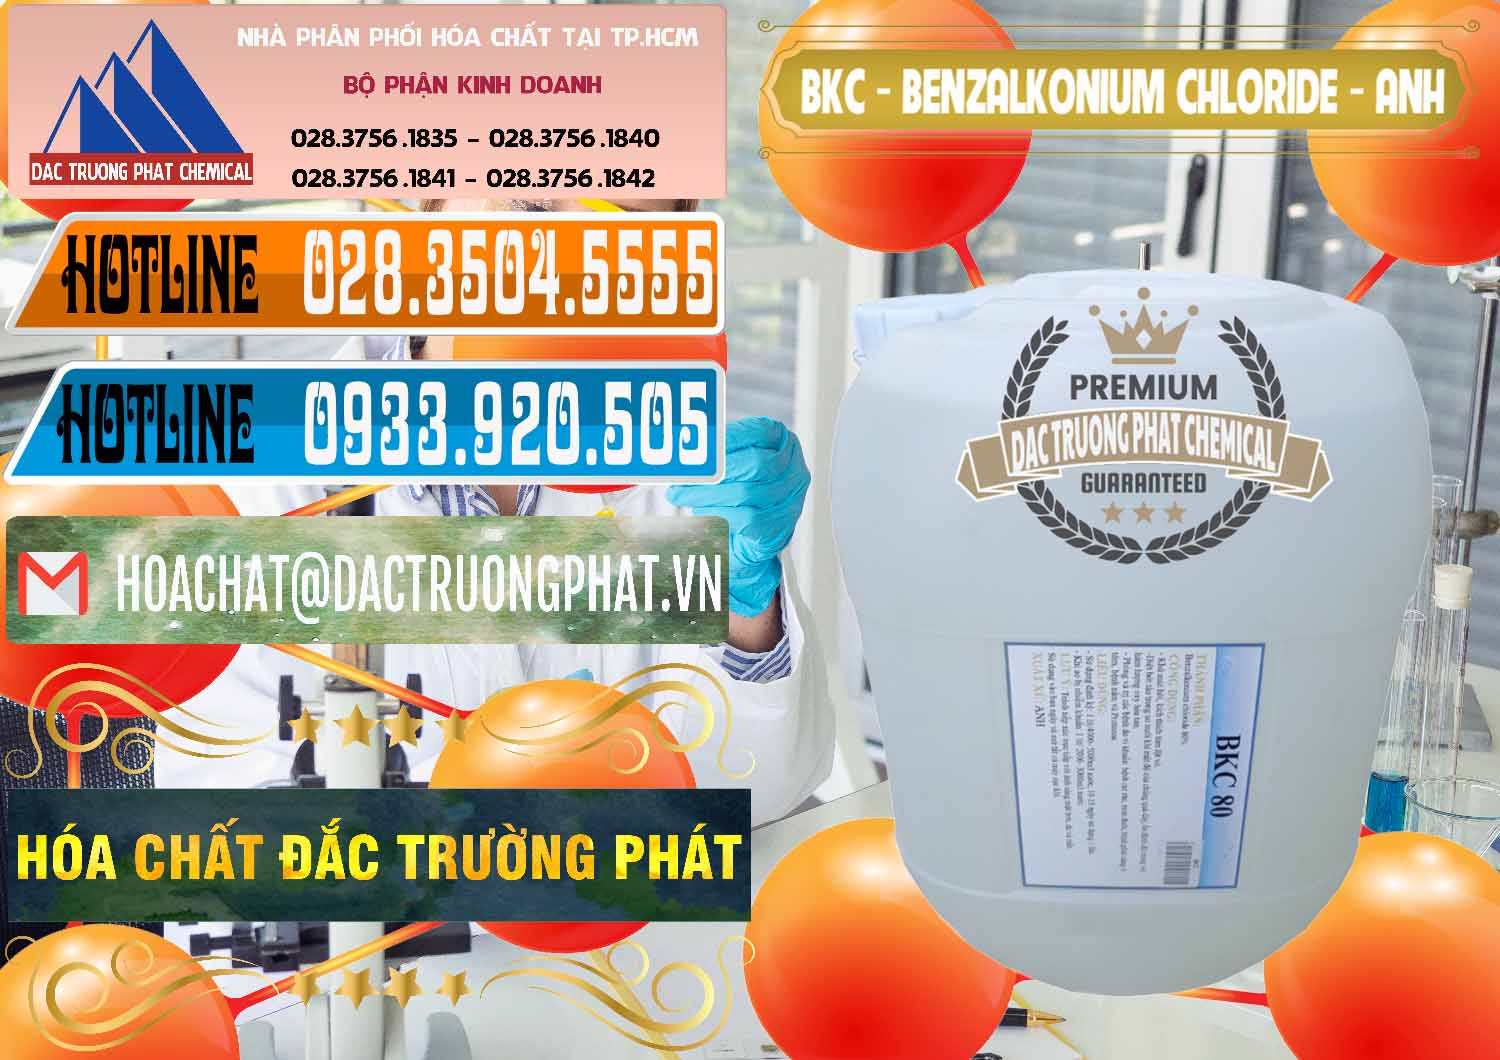 Cty chuyên cung ứng _ bán BKC - Benzalkonium Chloride Anh Quốc Uk Kingdoms - 0415 - Đơn vị chuyên kinh doanh - phân phối hóa chất tại TP.HCM - stmp.net